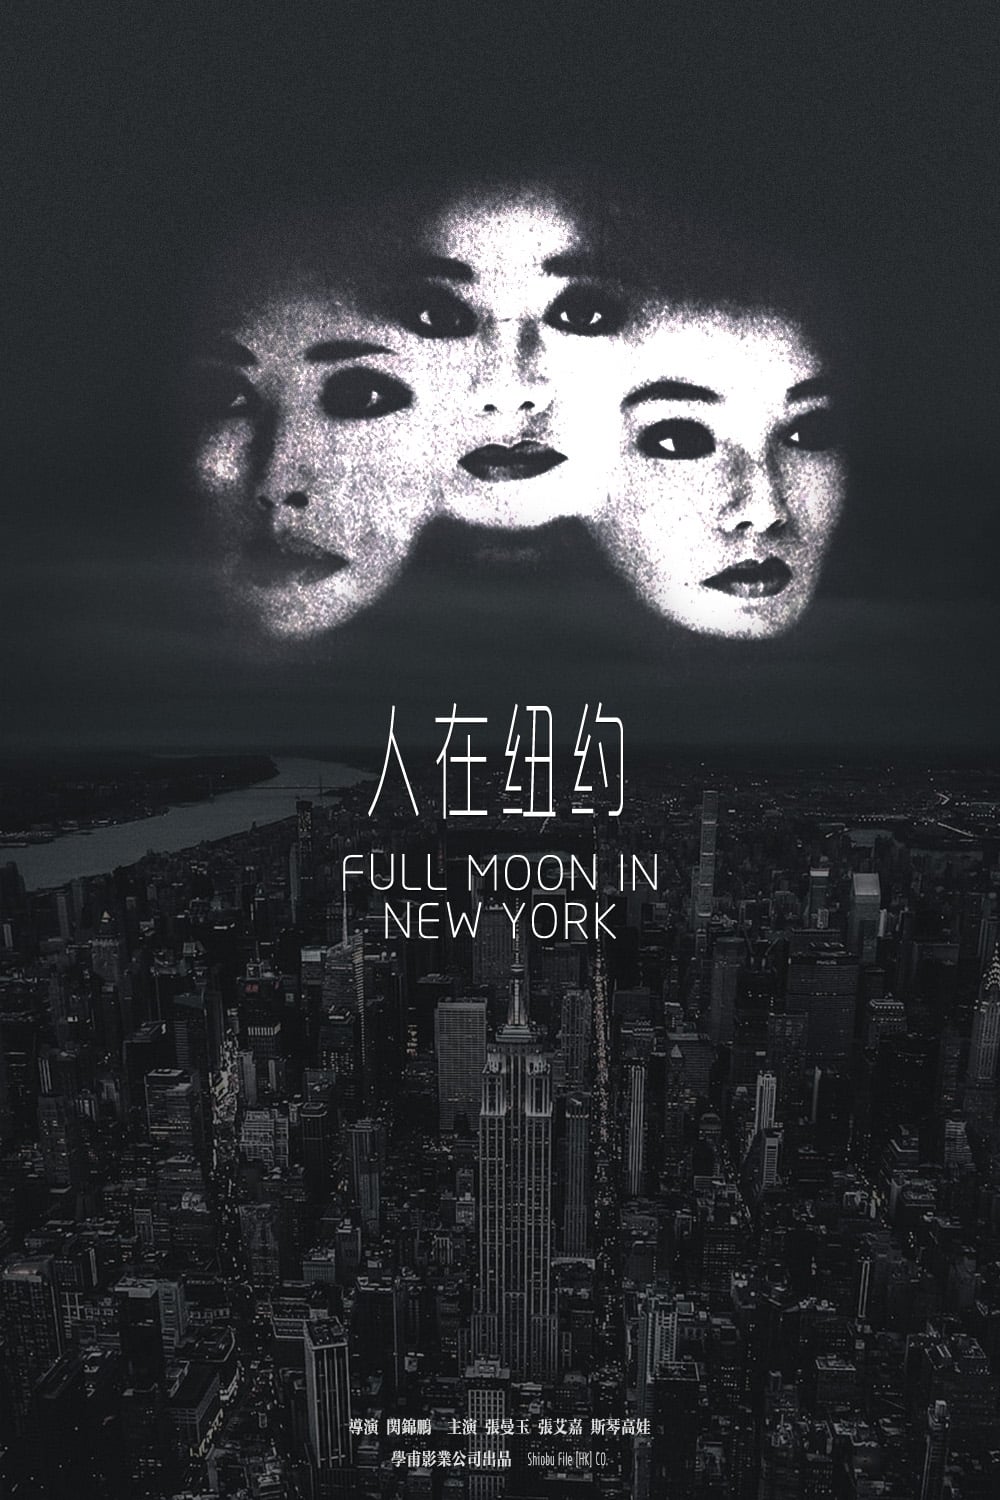 Full Moon in New York (1989)